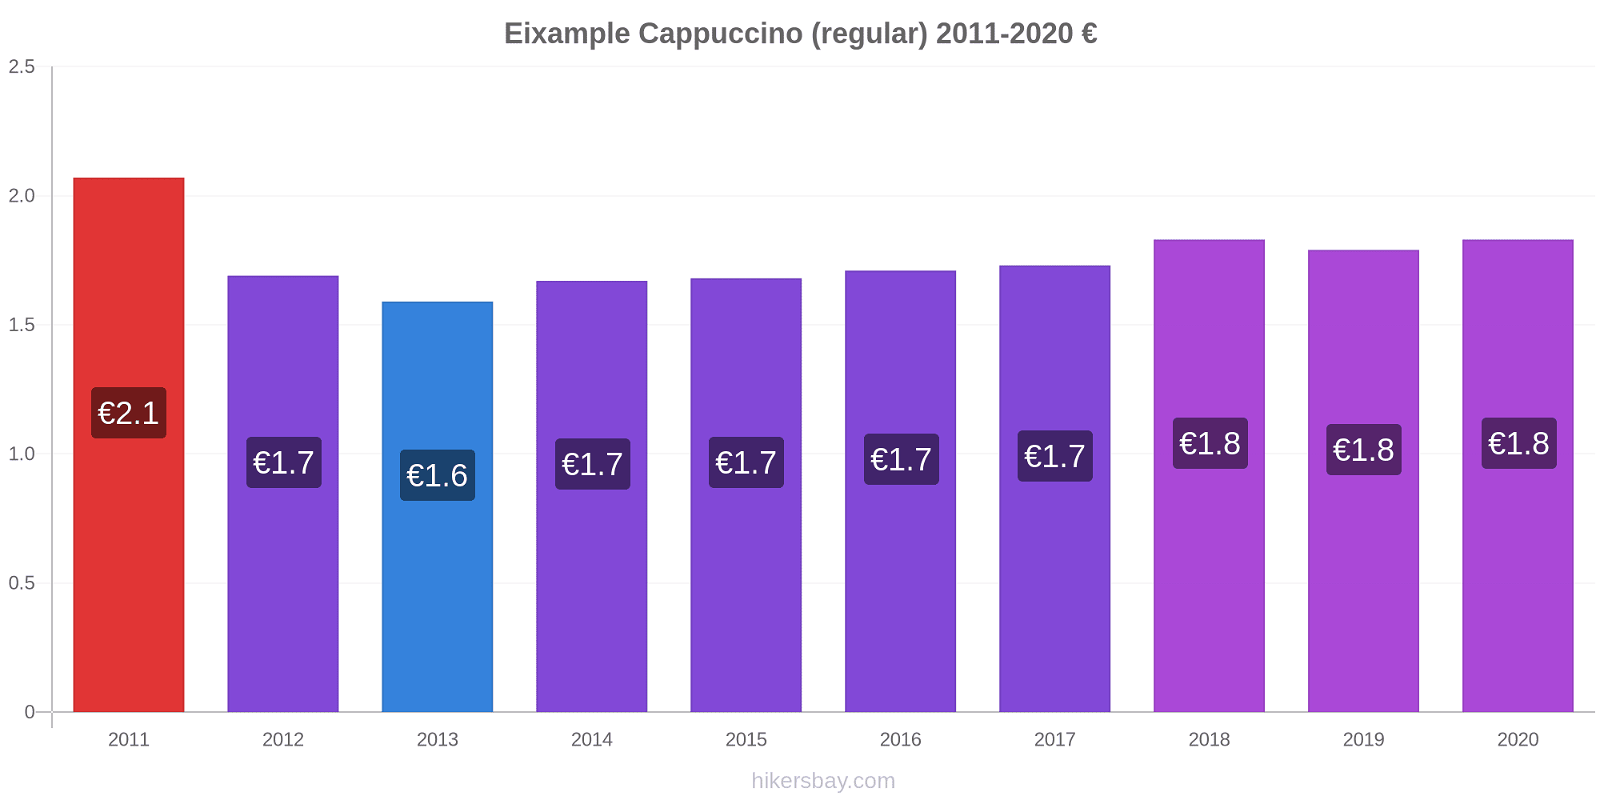 Eixample price changes Cappuccino (regular) hikersbay.com